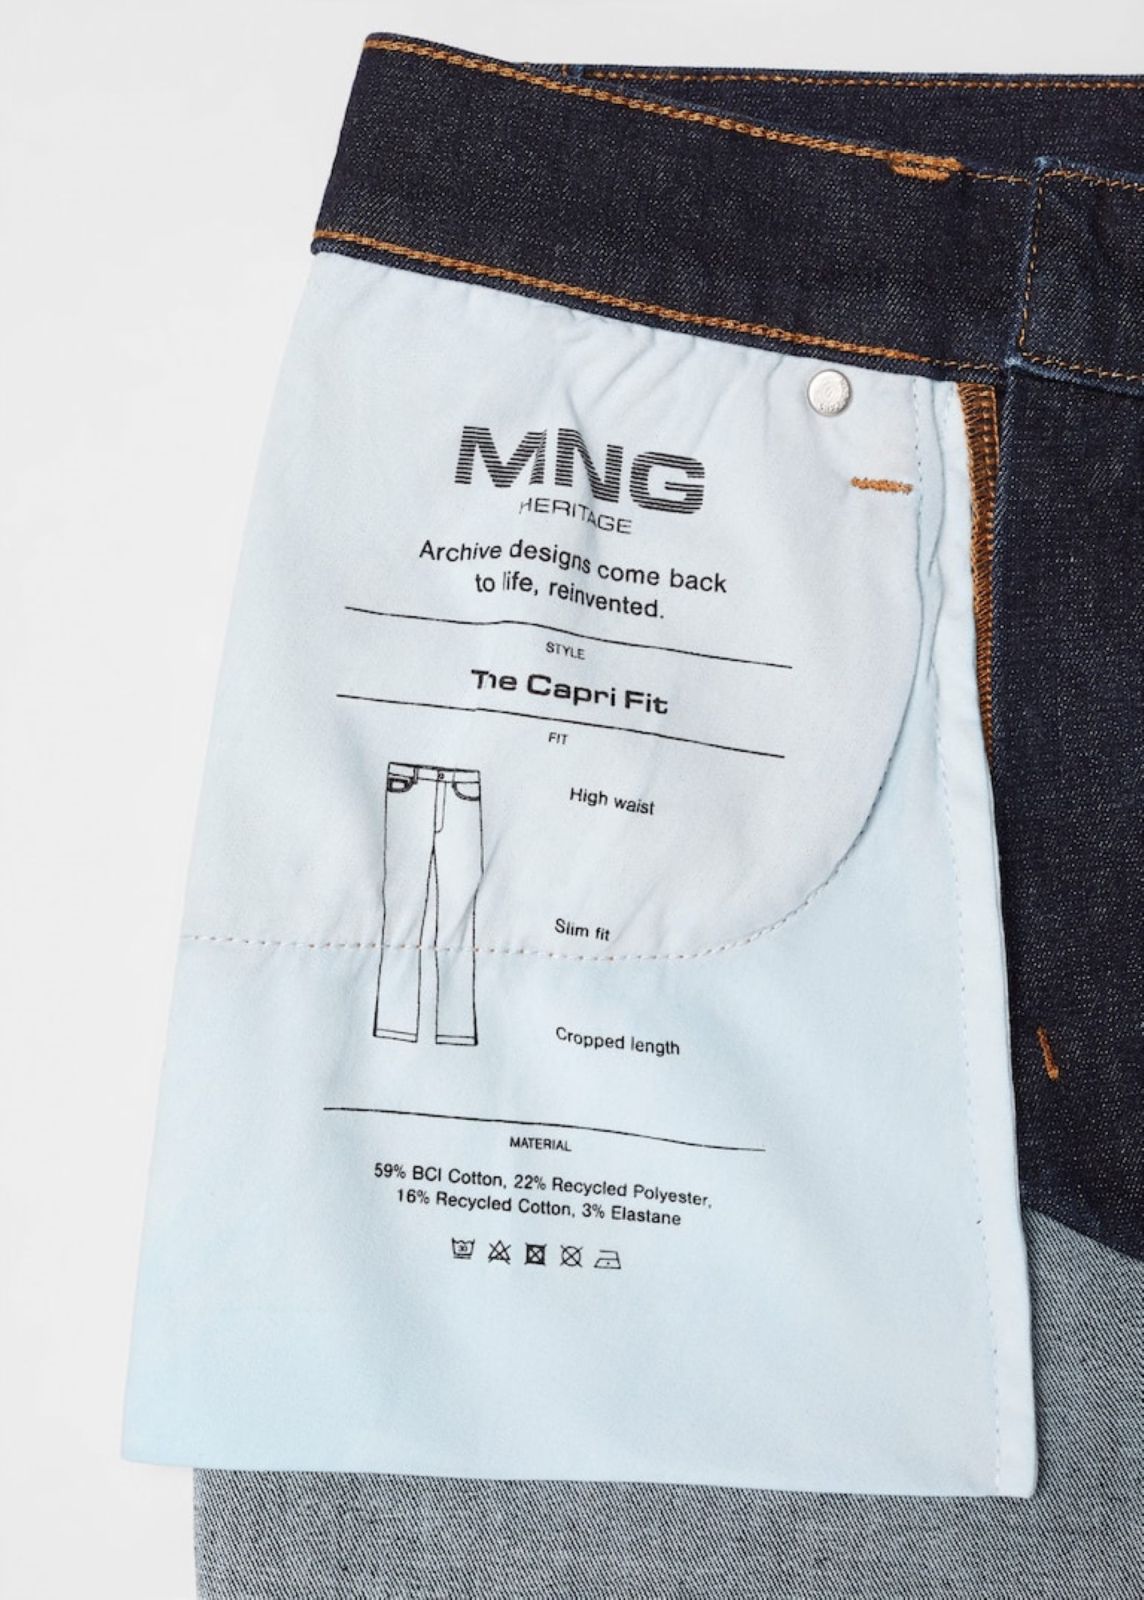  ג'ינס עם תיפורים מודגשים של MANGO